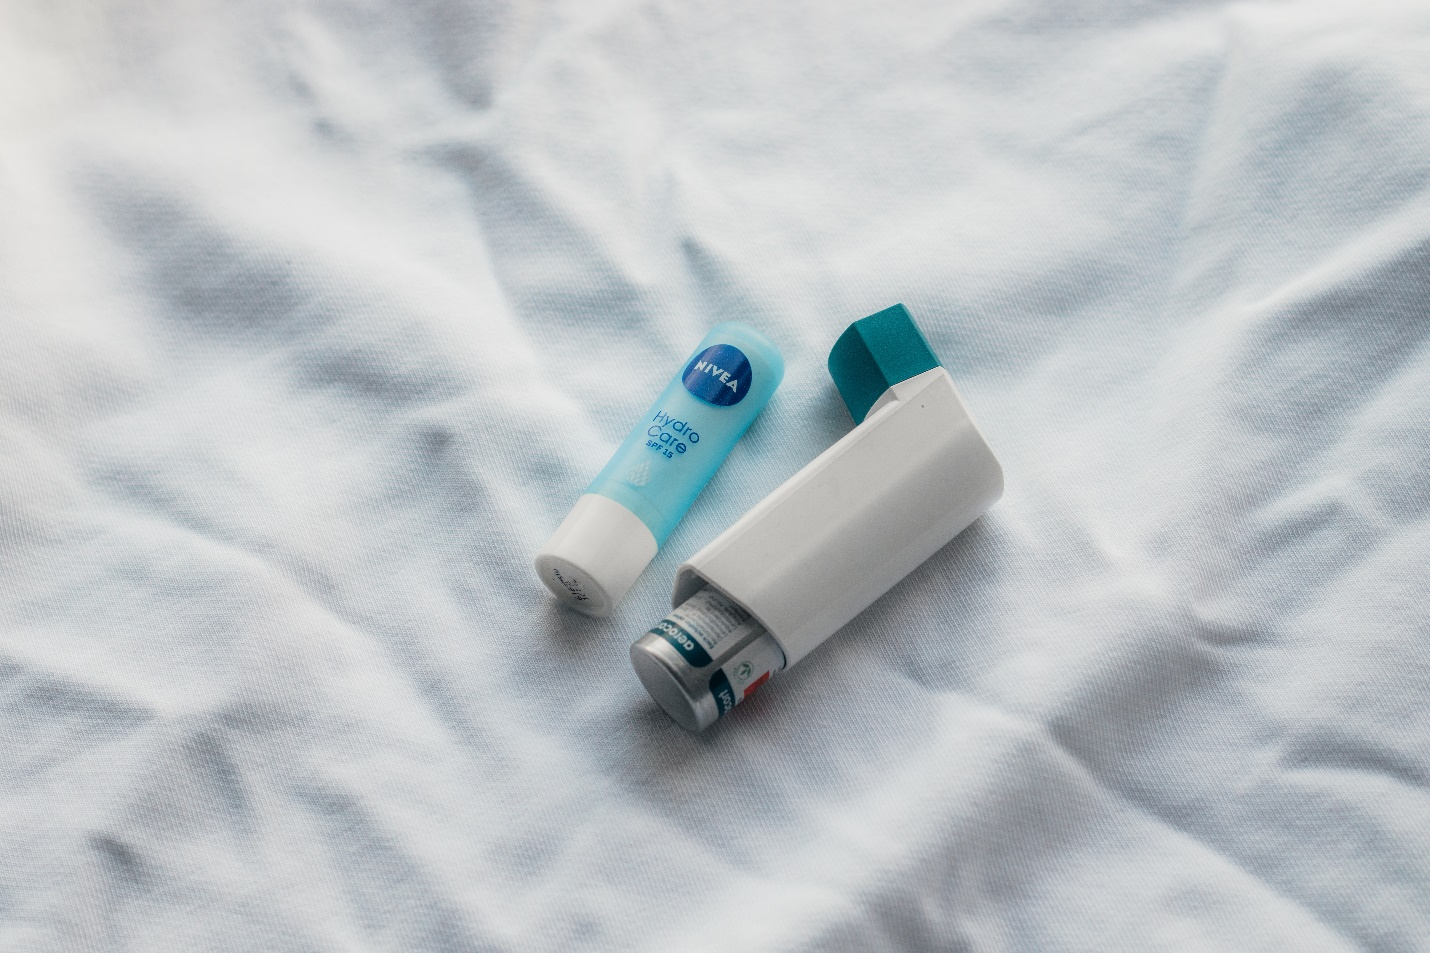 An inhaler and a lip balm